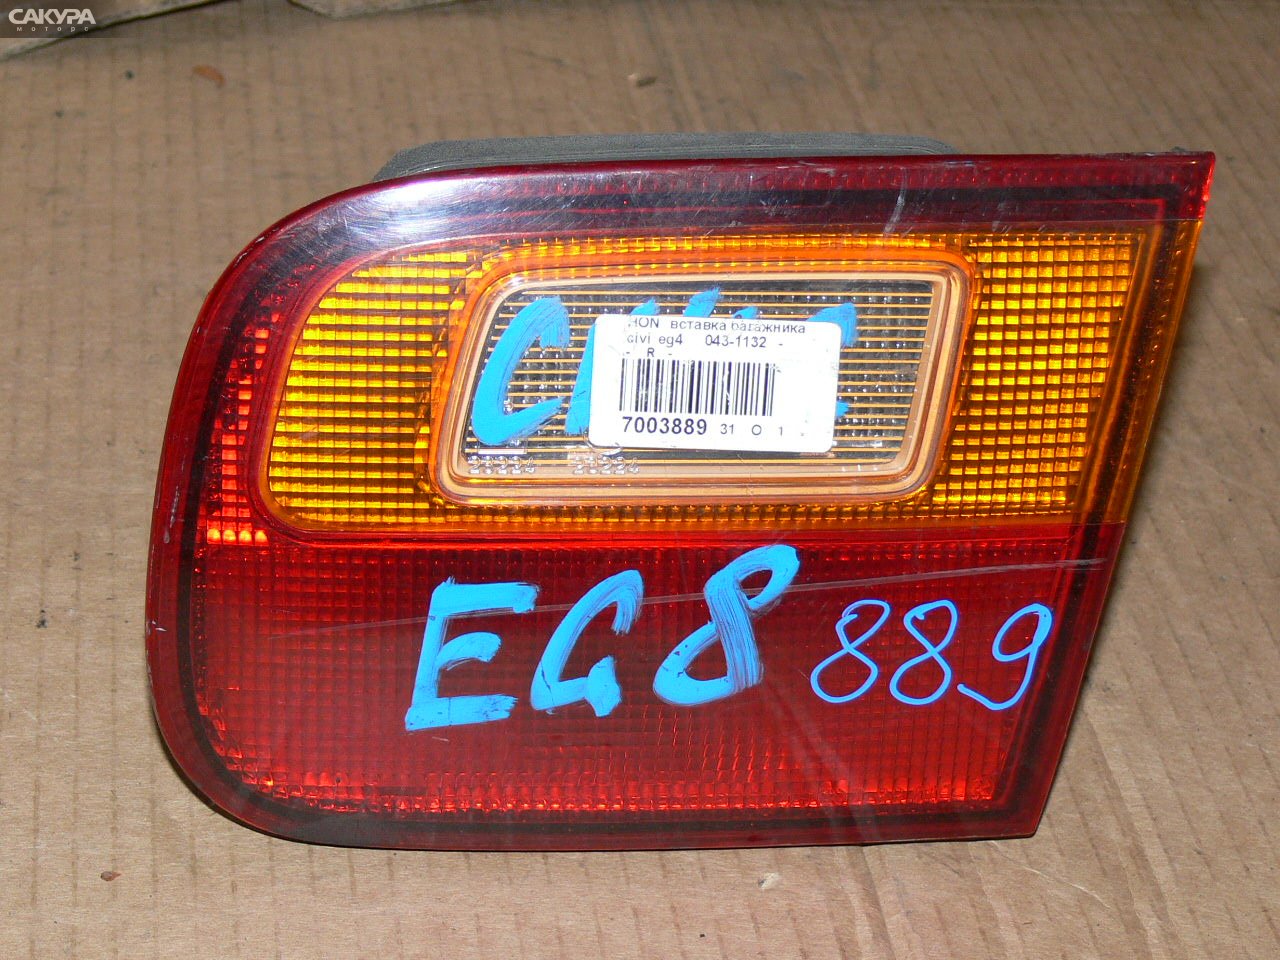 Фонарь вставка багажника правый Honda Civic EG4 043-1132: купить в Сакура Иркутск.